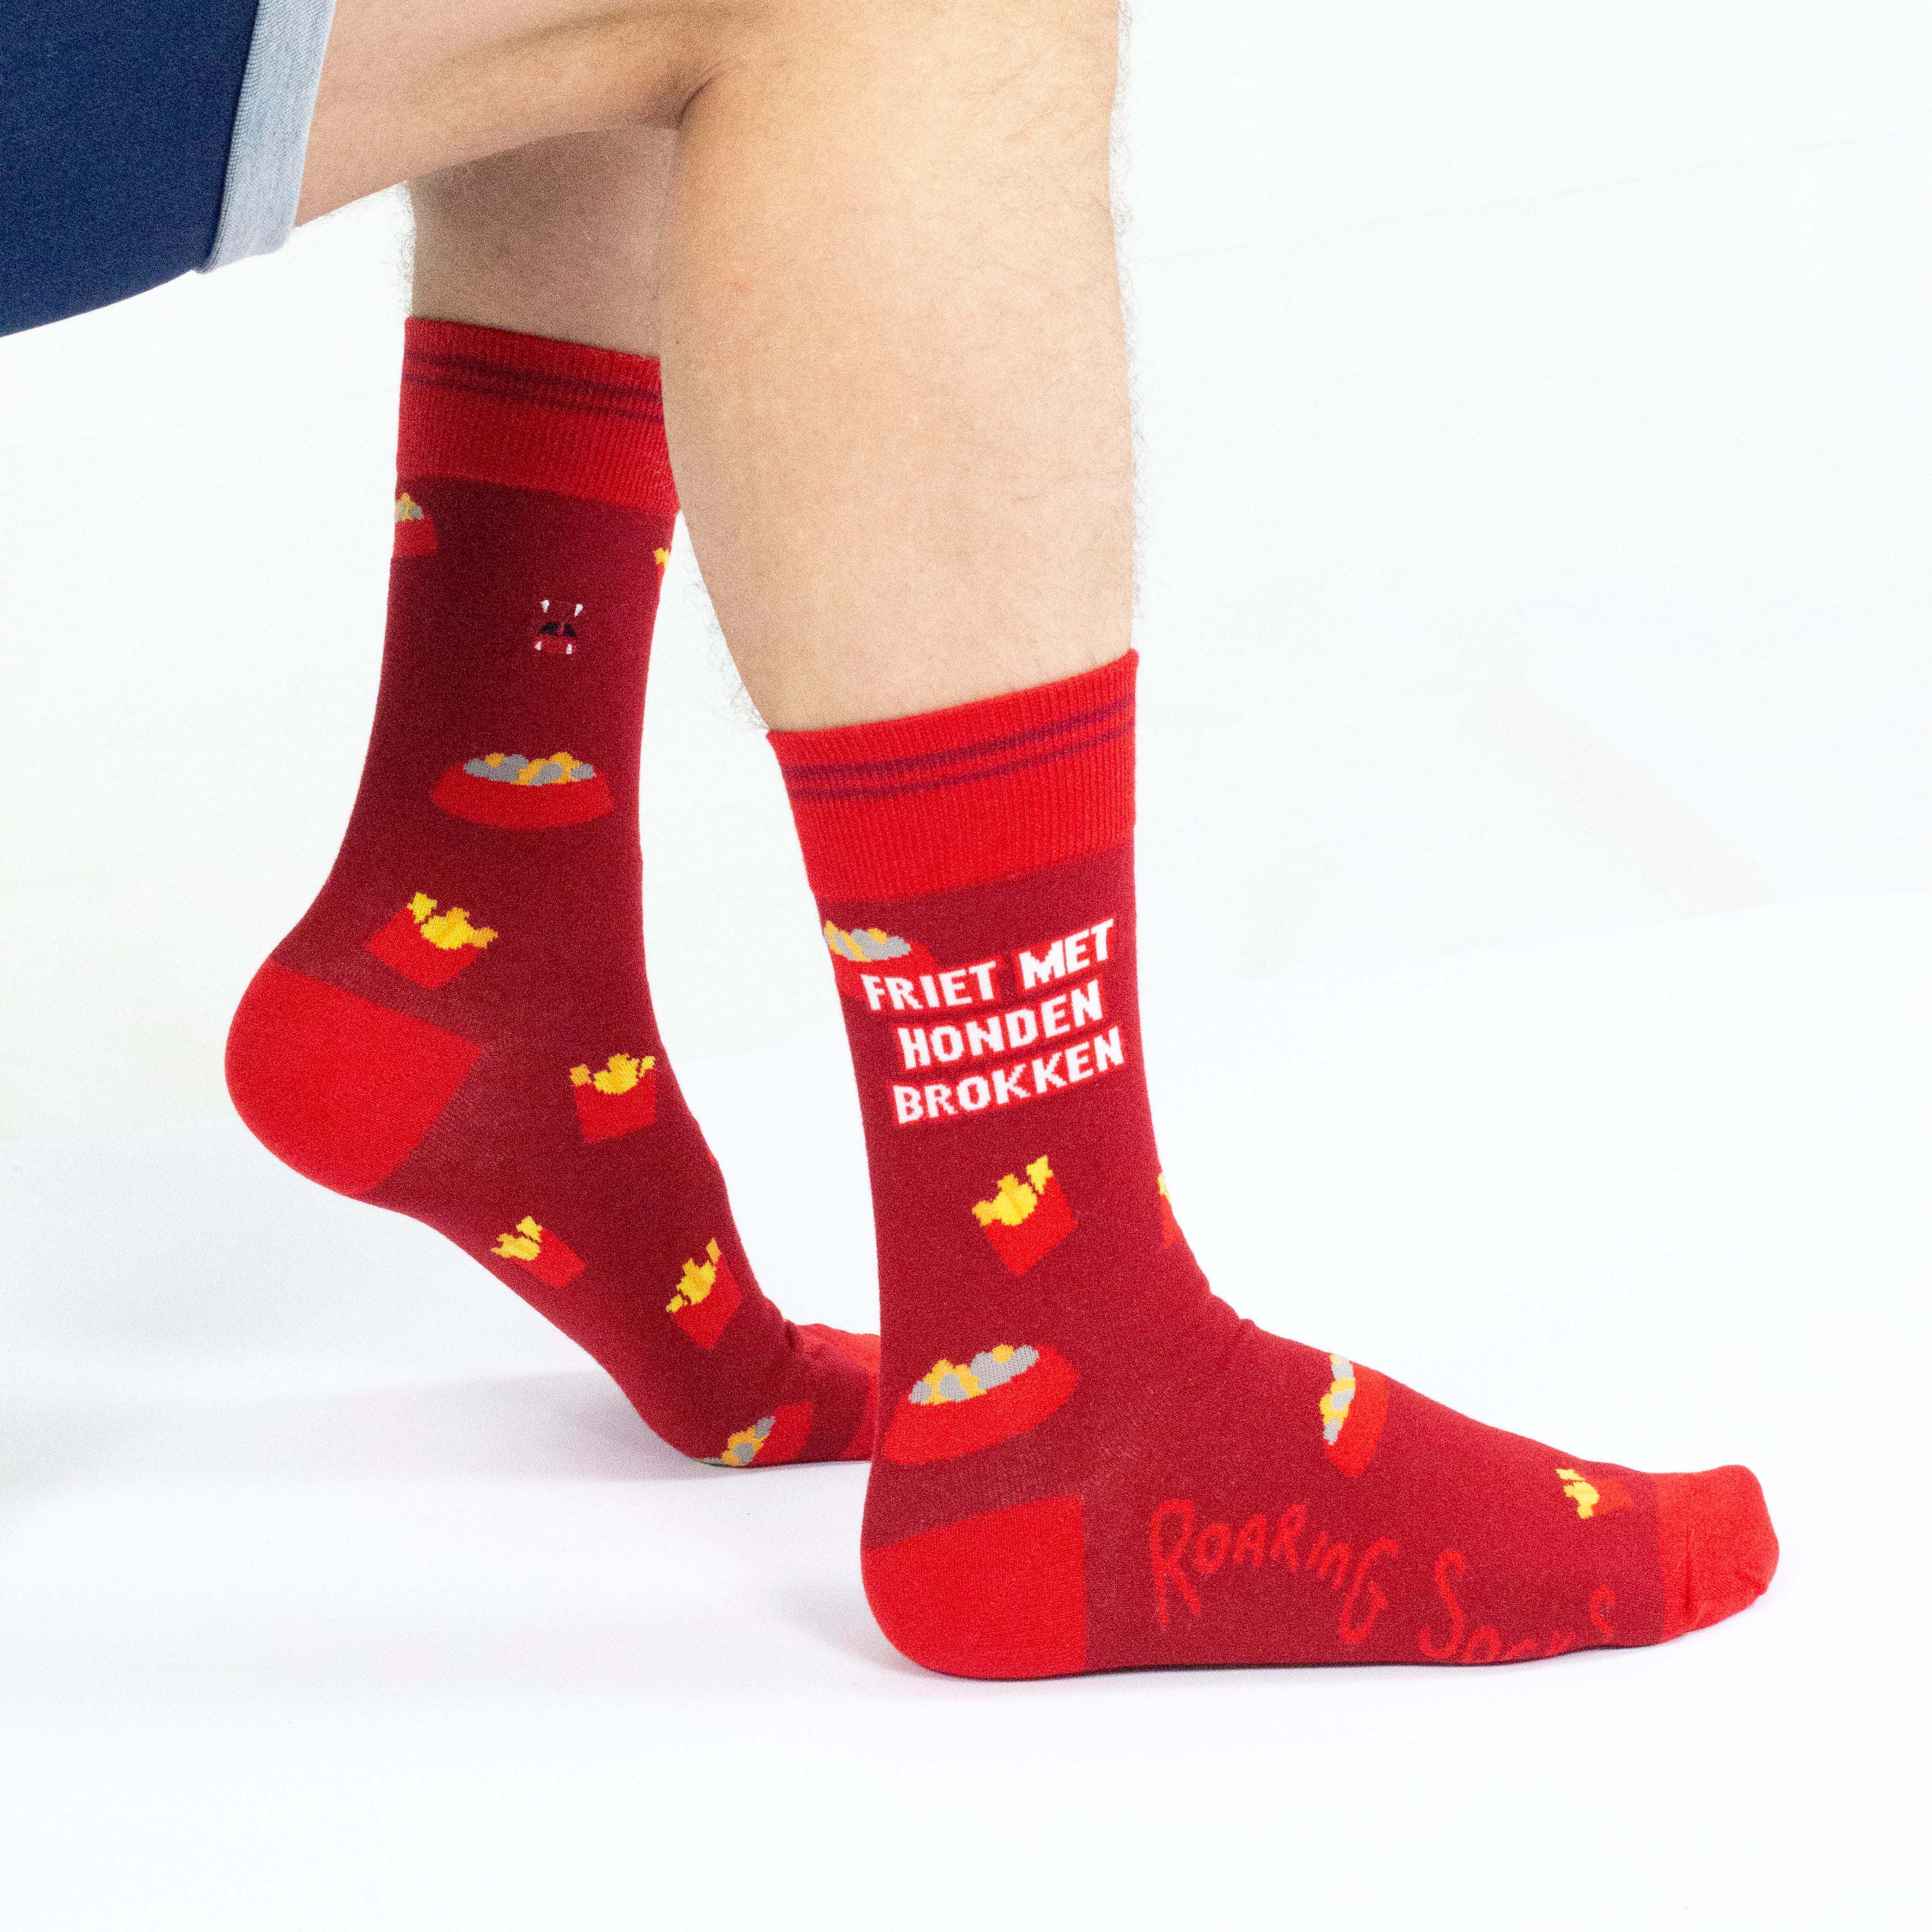 Roaring Socks - Sokken - Friet met Honden brokken - Rood - Katoen - Leuk - Grappig - Vrolijk - Cadeau